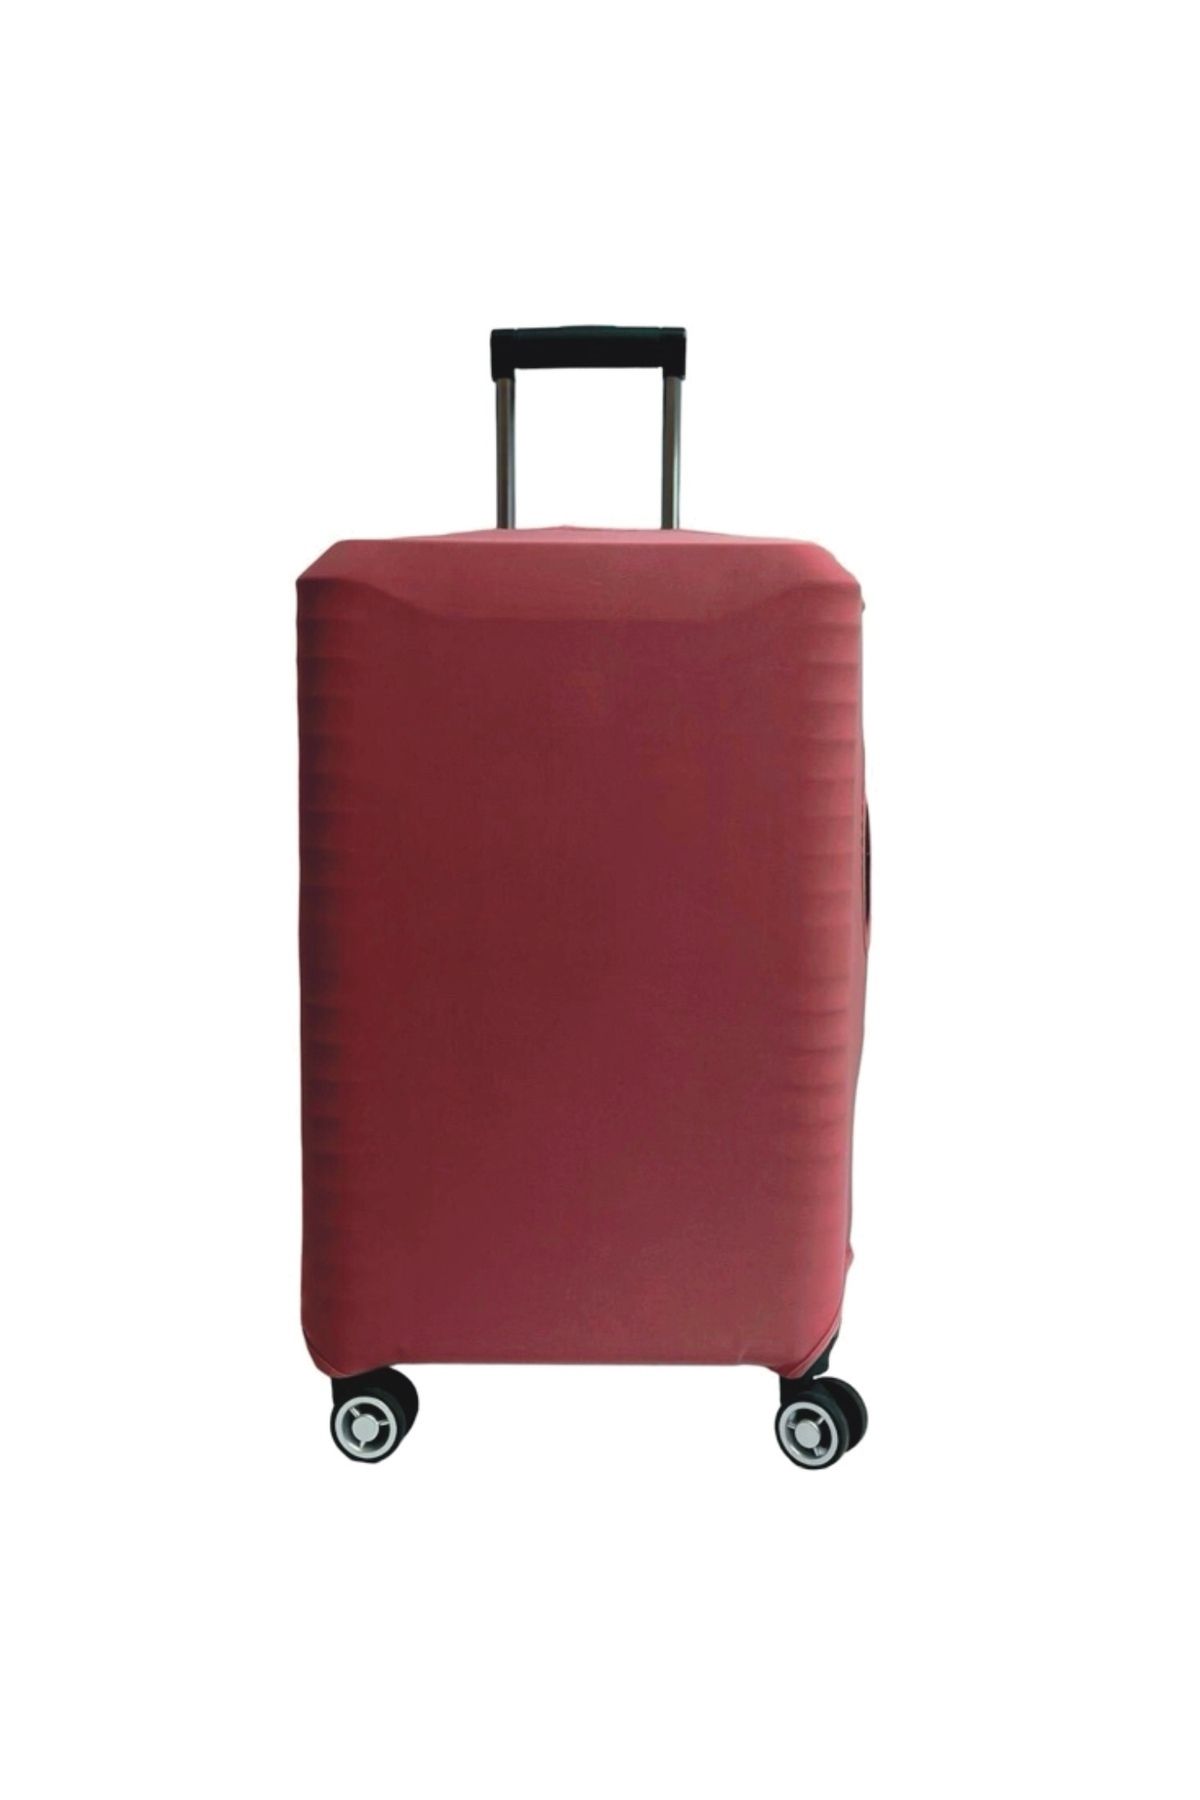 Trendglobal valiz bavul koruyucu kılıfı PUDRA